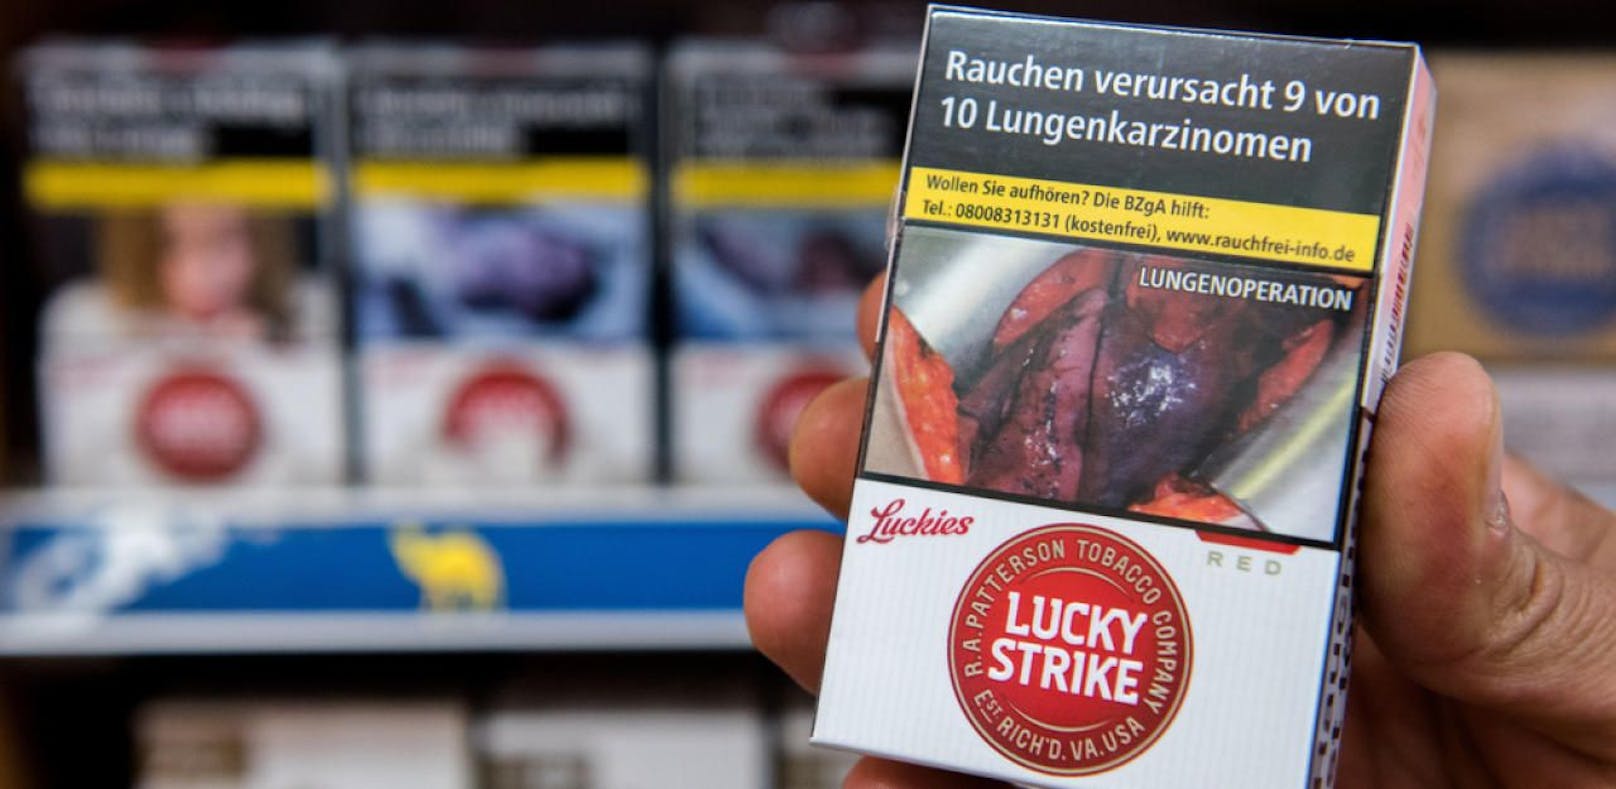 Tschick-Schockbilder lassen Raucher kalt